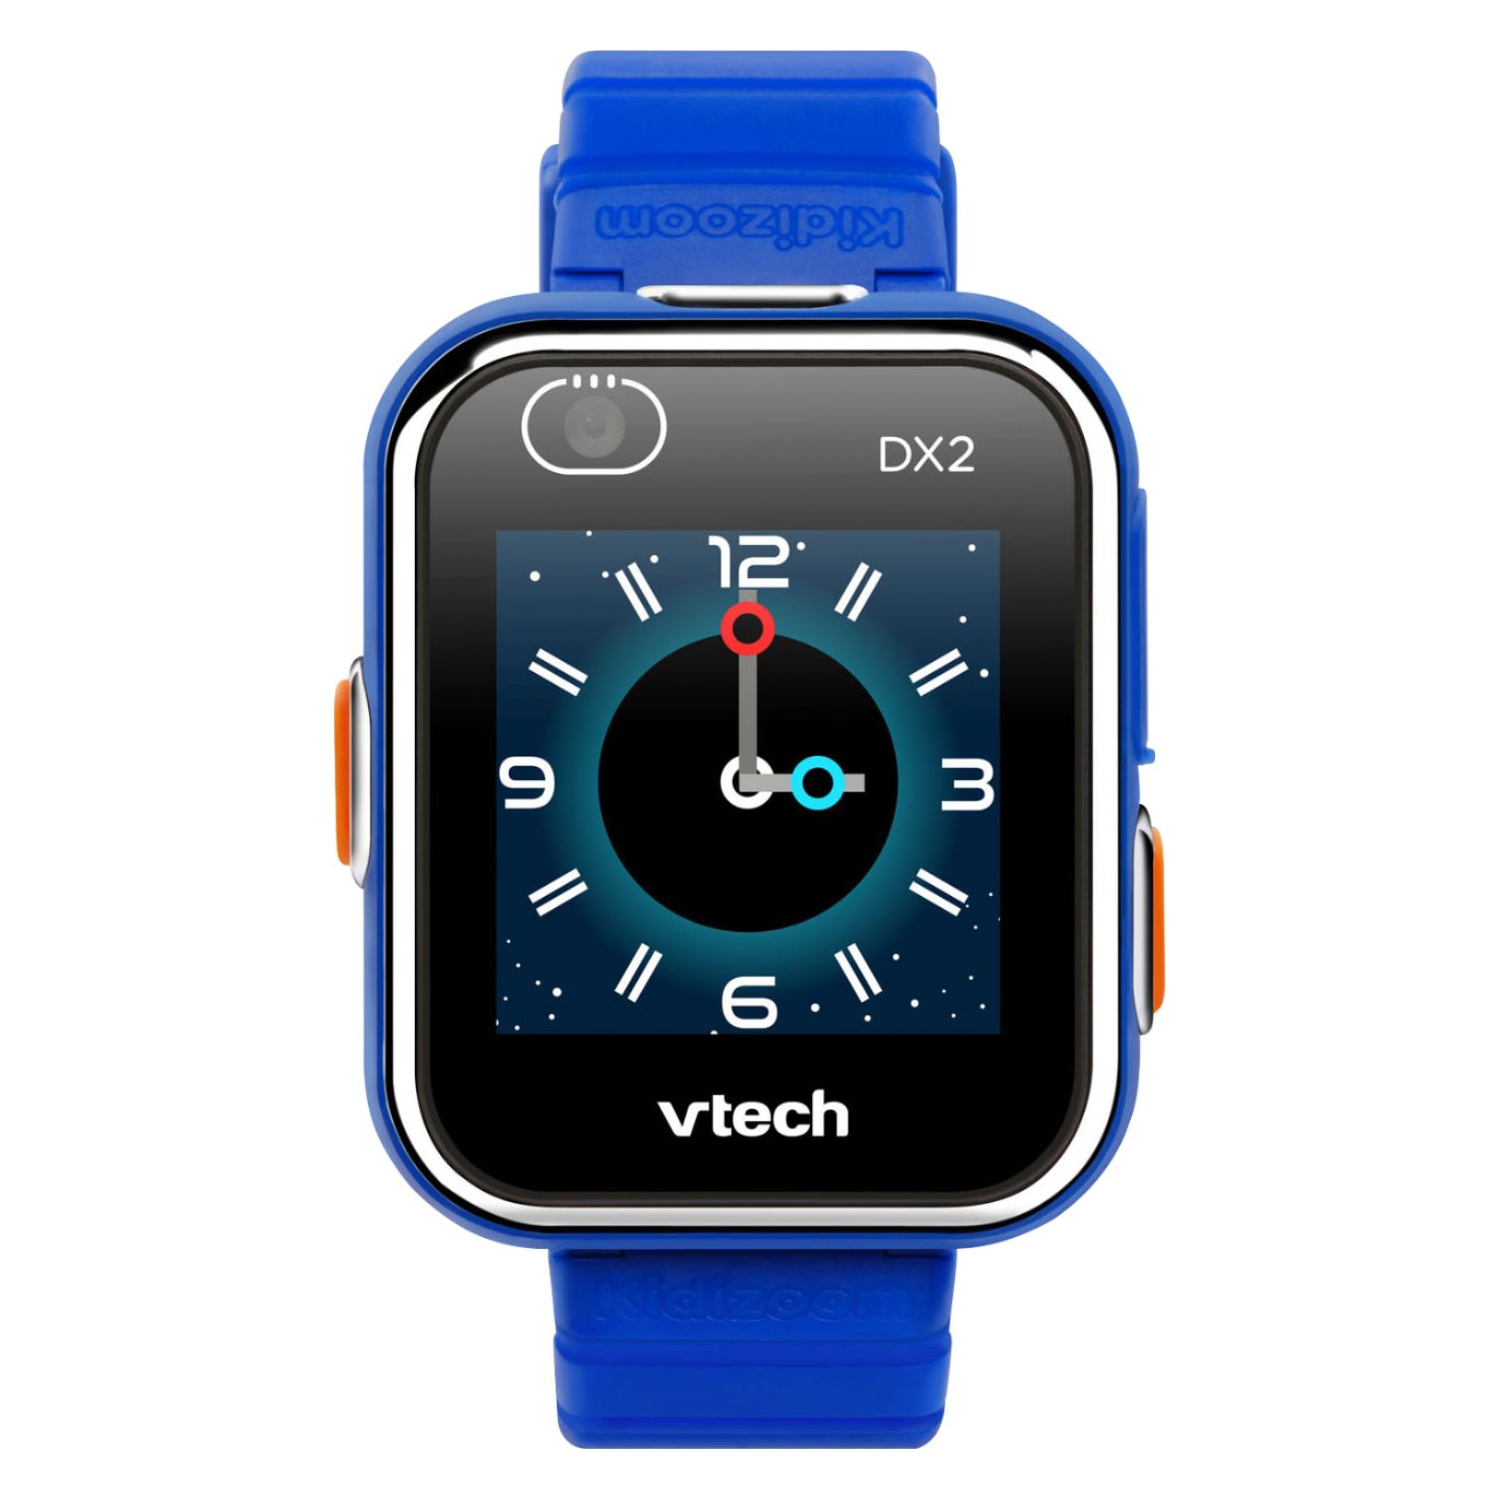 VTech KidiZoom Smartwatch DX2 - Blue - Brand New